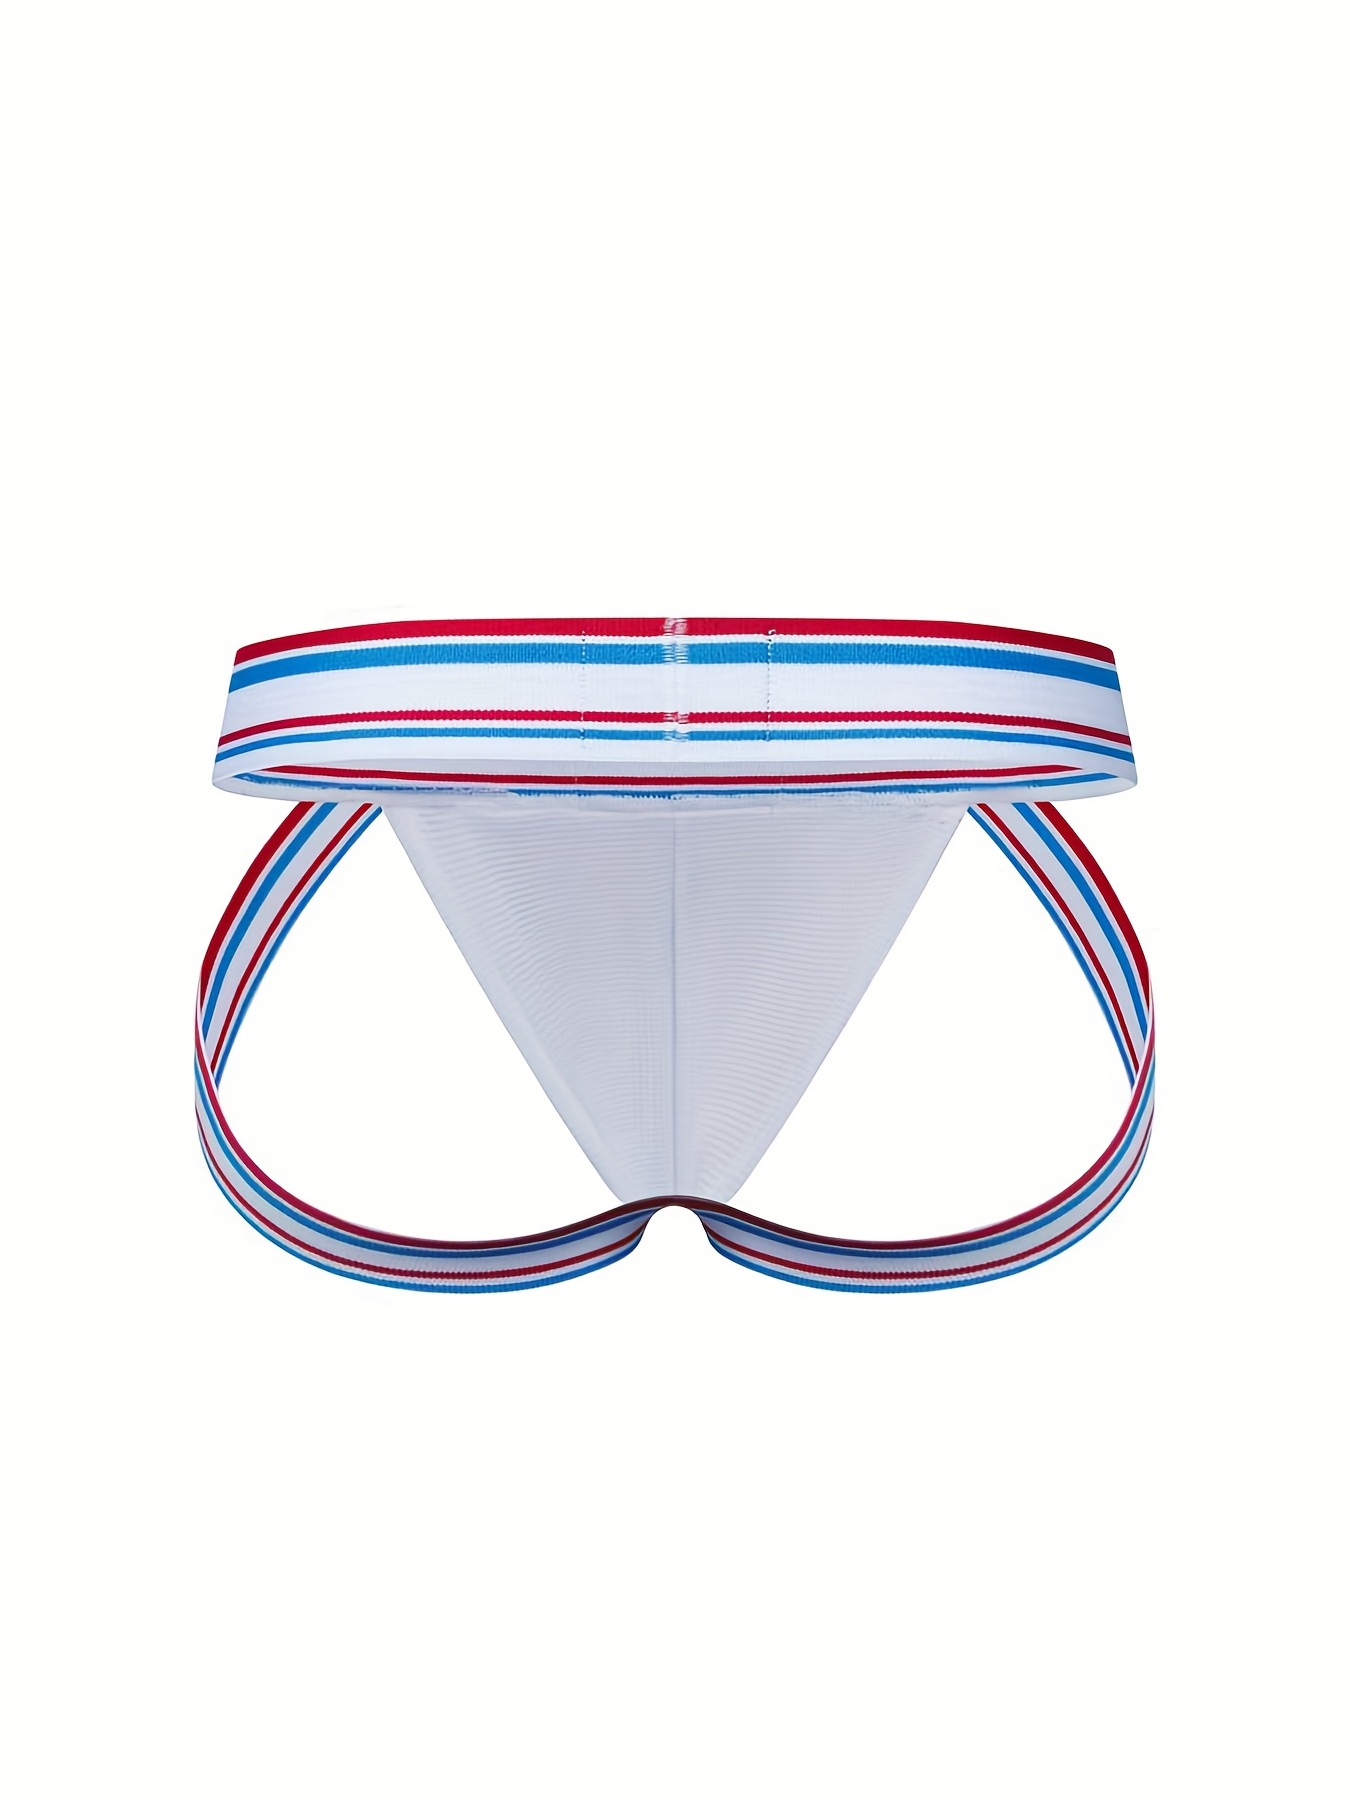 Buy Panteasy Men's Mesh Hole Breathable Jockstrap Underwear Online